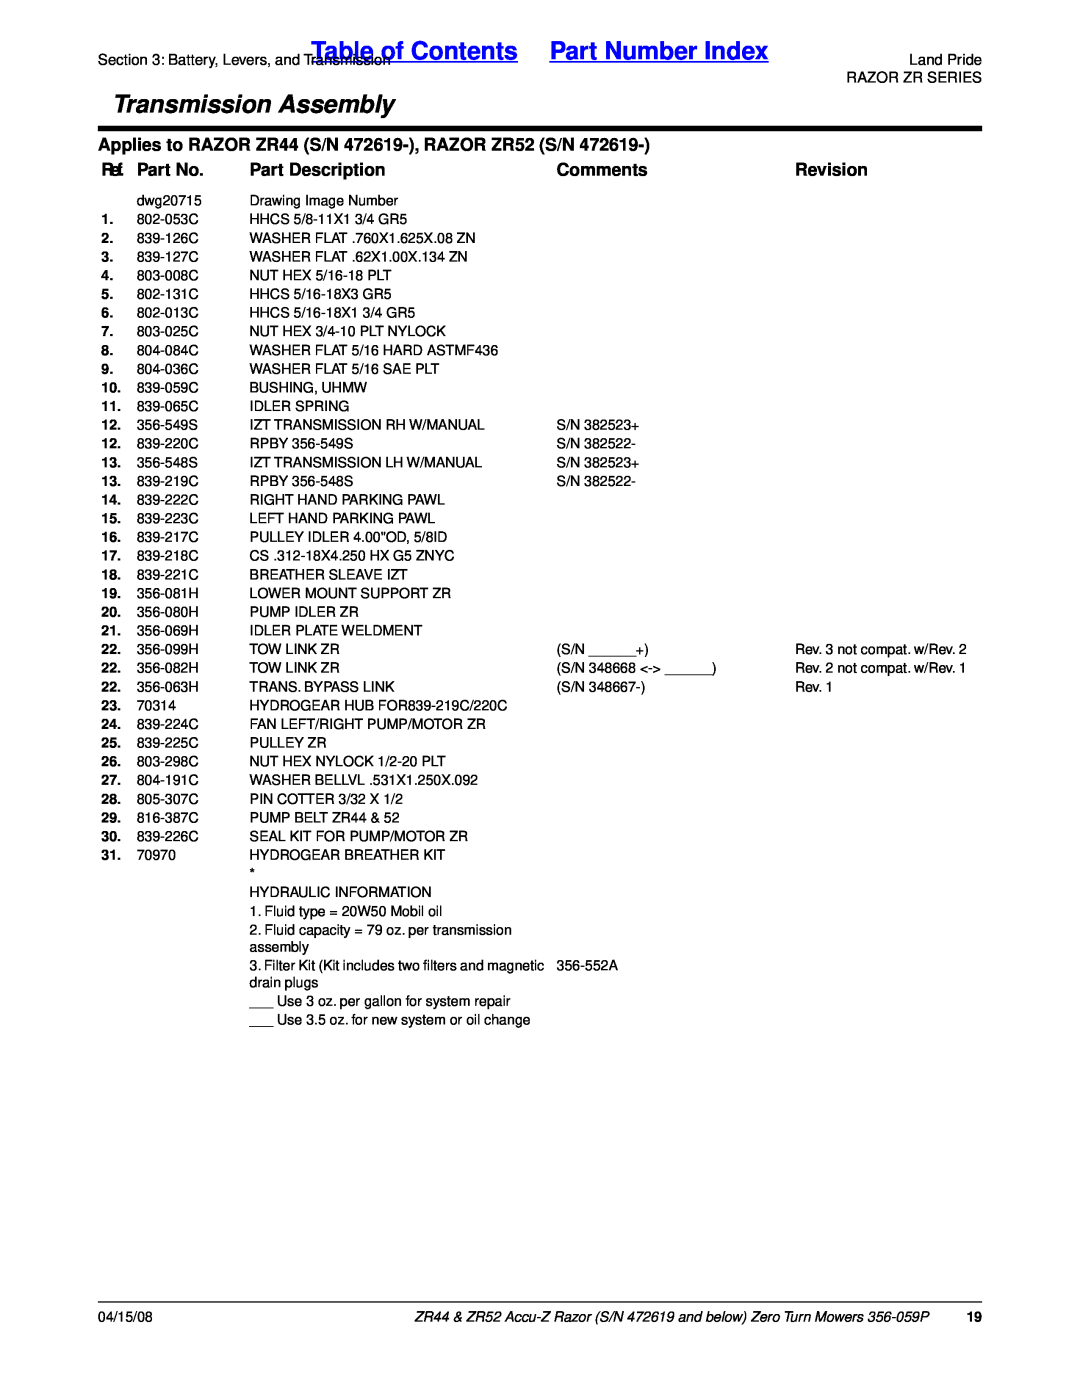 Land Pride ZR44, ZR52 Table of Contents Part Number Index, Transmission Assembly, Ref. Part No, Part Description, Comments 